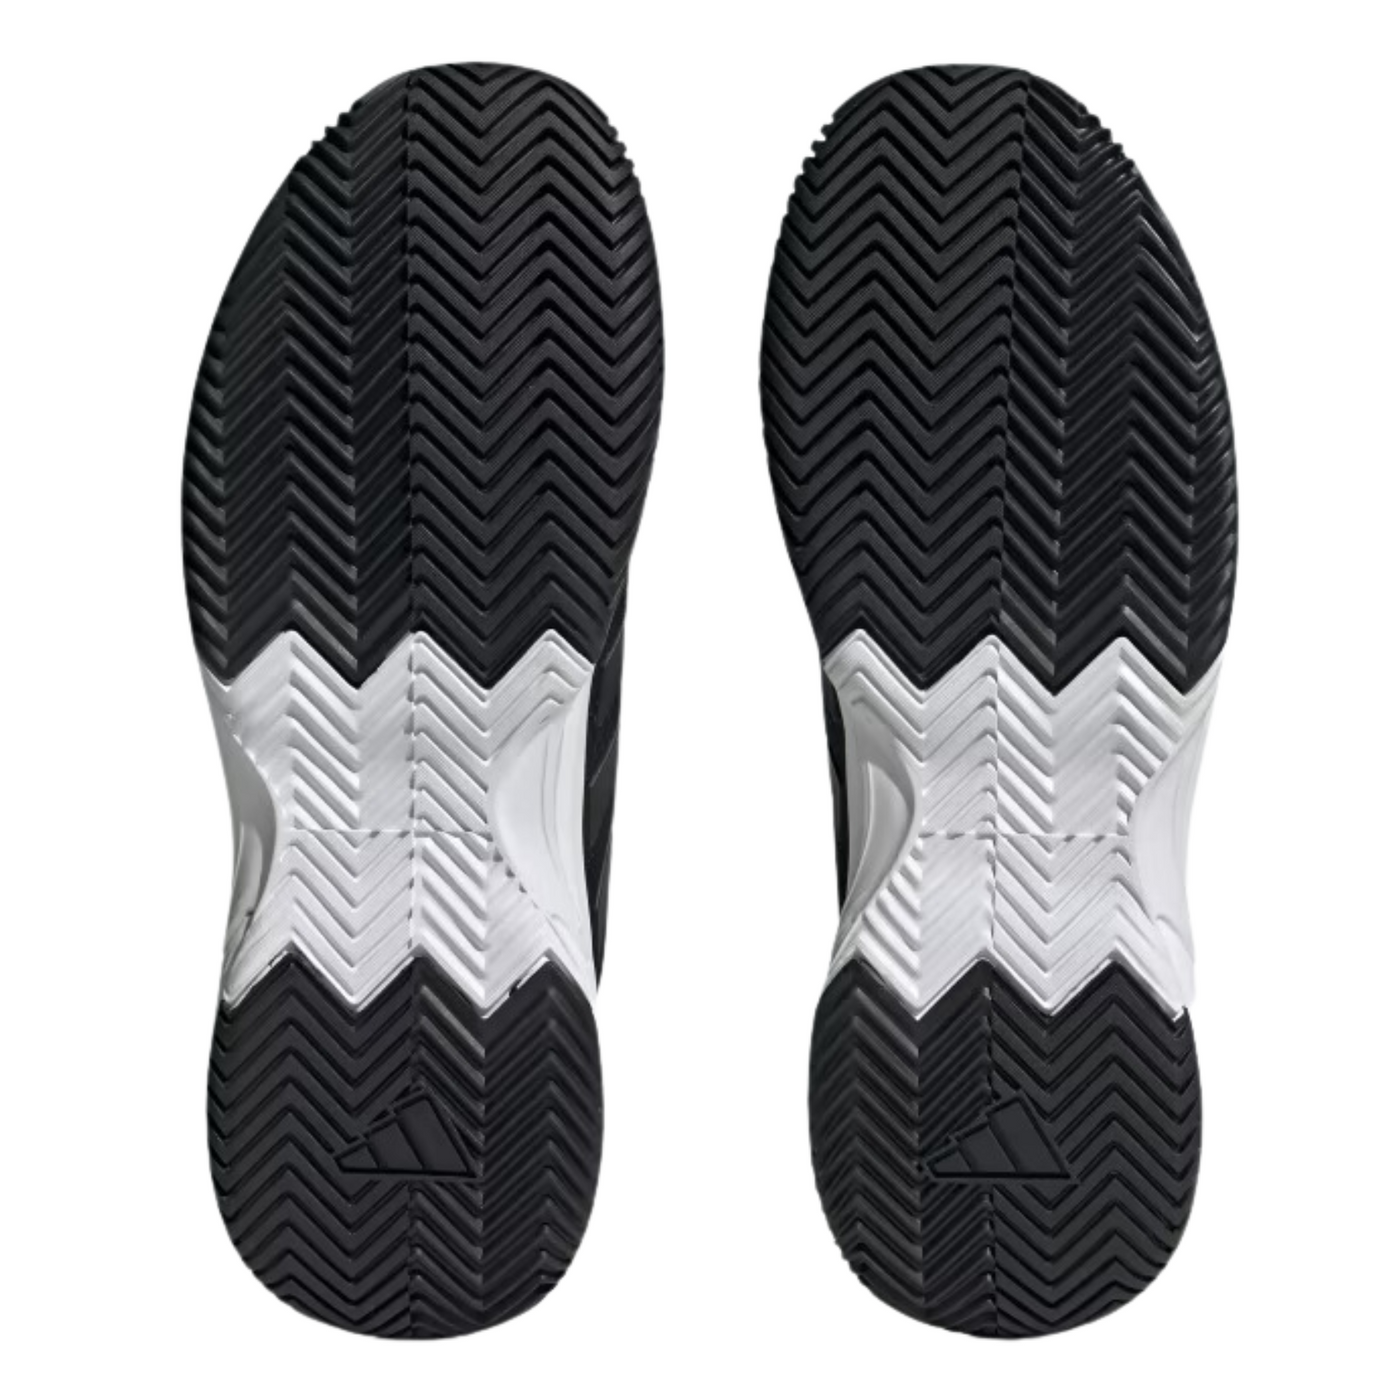 Adidas Game Court 2.0 Men Tennis Shoes - Core Black/Core Black/Grey Four